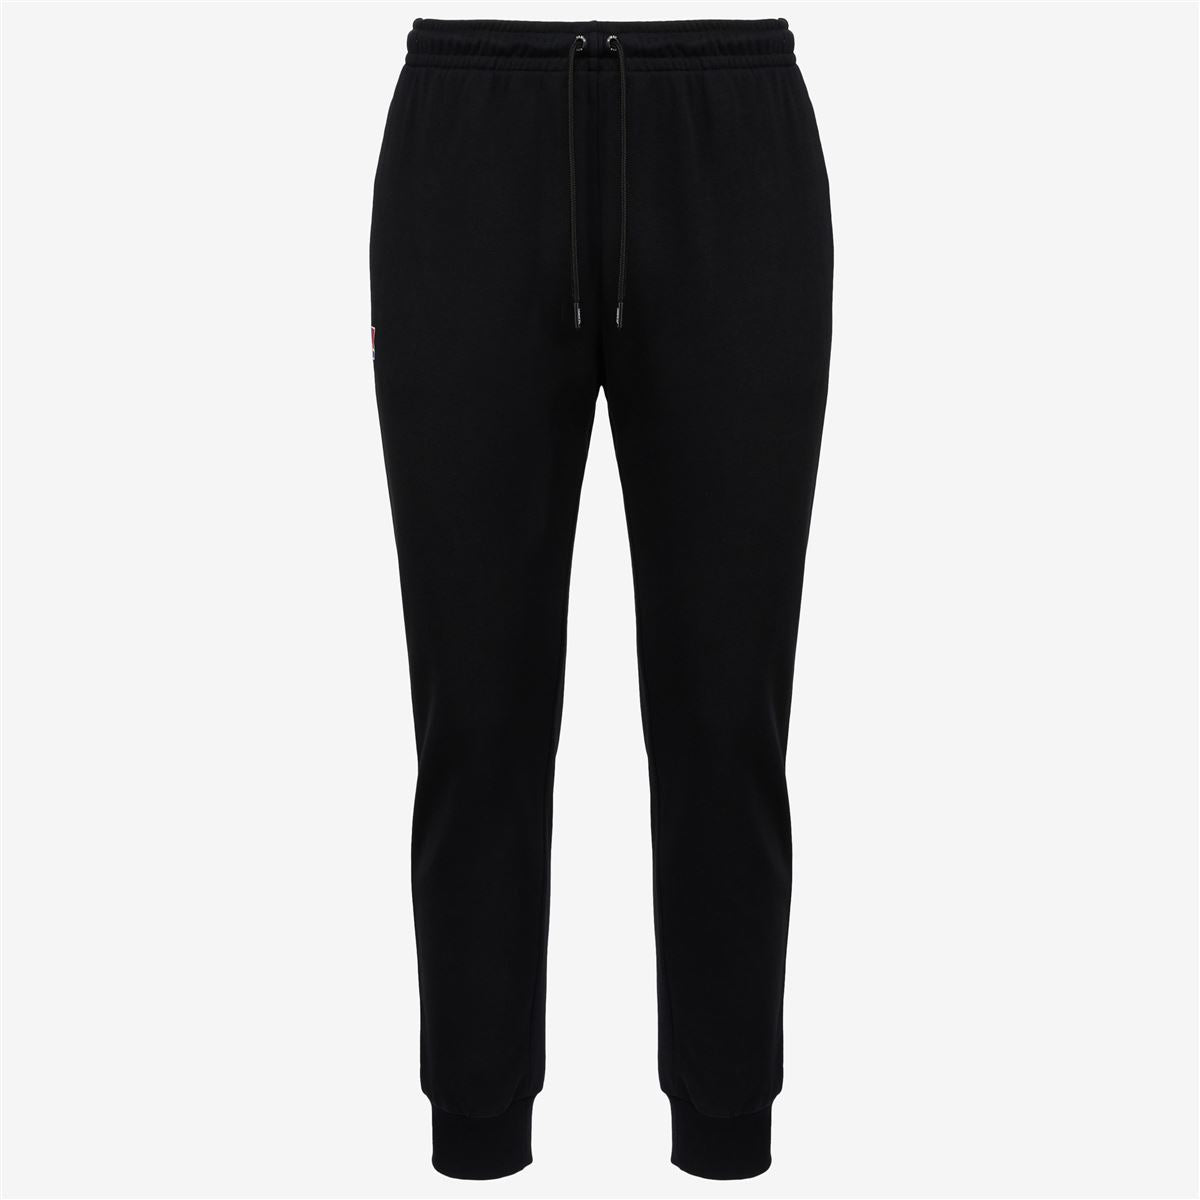 LE VRAI BISHOP POLY COTTON - Pants - Sport Trousers - Unisex - BLACK PURE